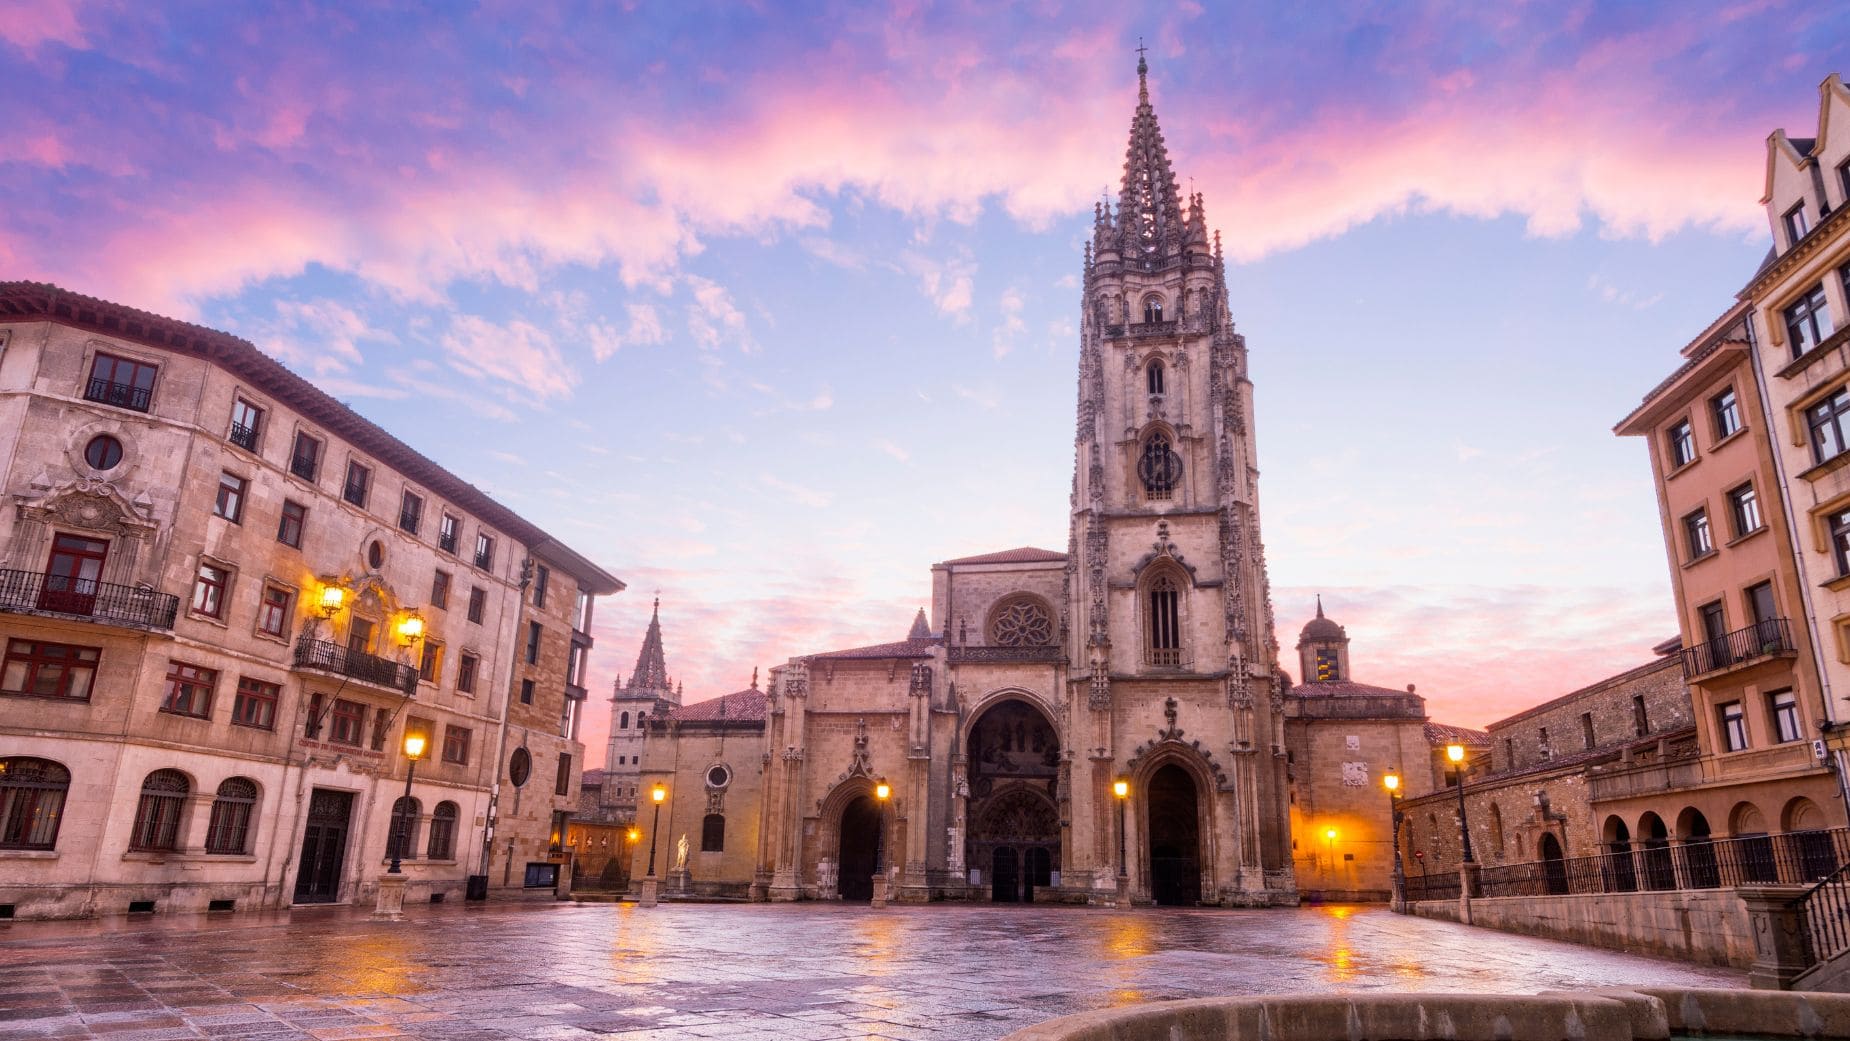 El IMSERSO ofrece un viaje a Oviedo a precio de risa